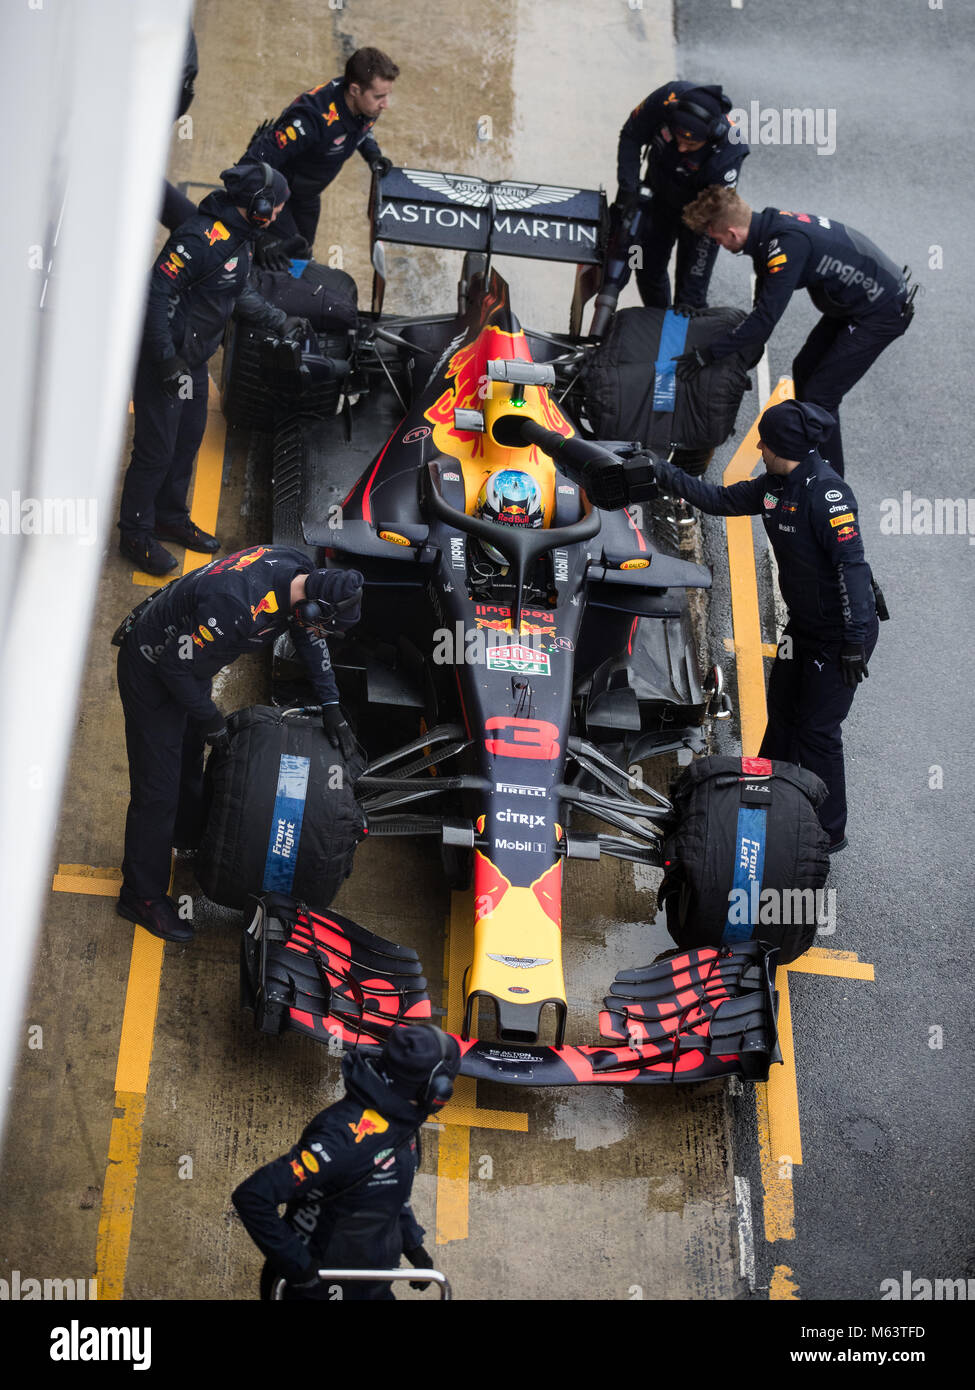 Montmelo, Spagna. 28 Feb, 2018. La terza giornata di F1 Winter Test a Barcellona sul Circuito de Catalunya. Daniel Ricciardo in Australia la guida del (3) Aston Martin Red Bull Racing RB14 Tag Heuer. Credito: UKKO Immagini/Alamy Live News Foto Stock